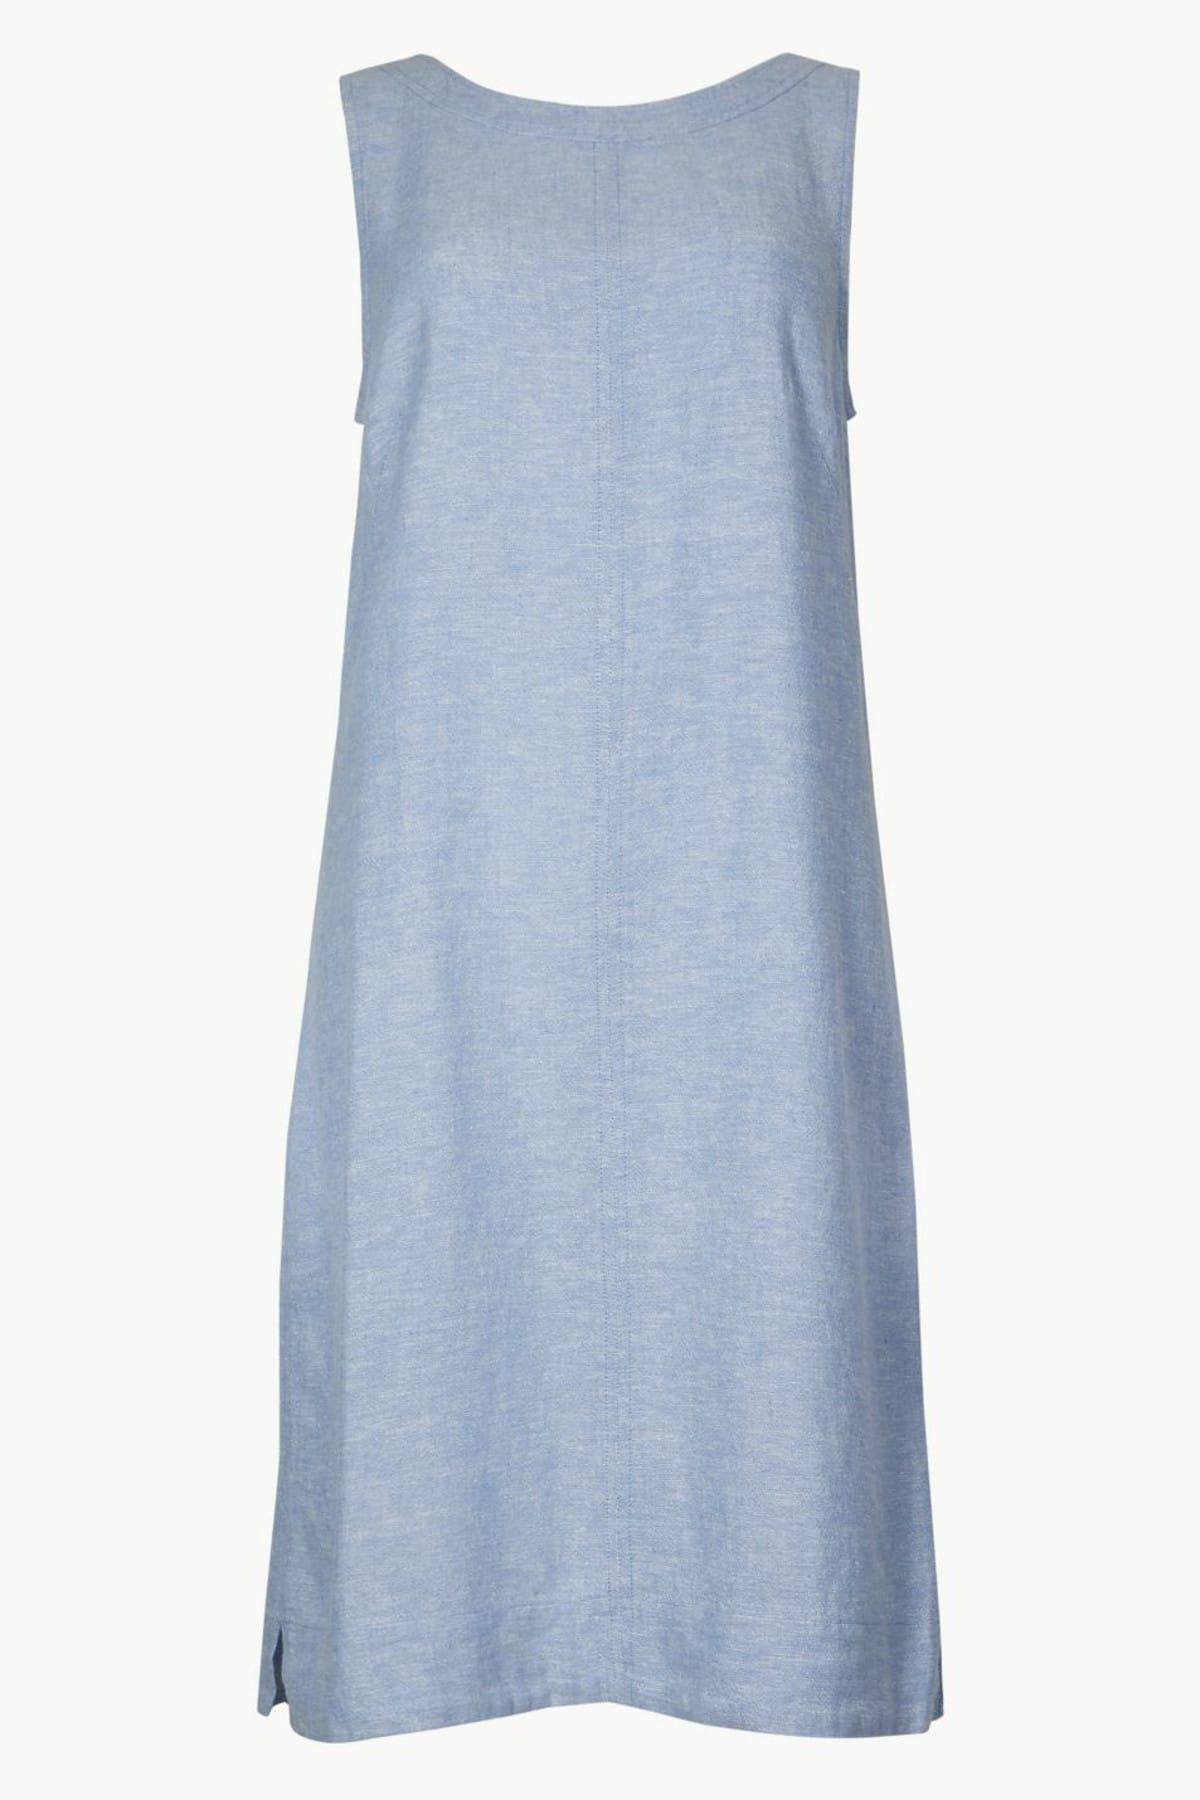 Marks & Spencer Kadın Mavi Yuvarlak Yaka Keten Elbise T42006002